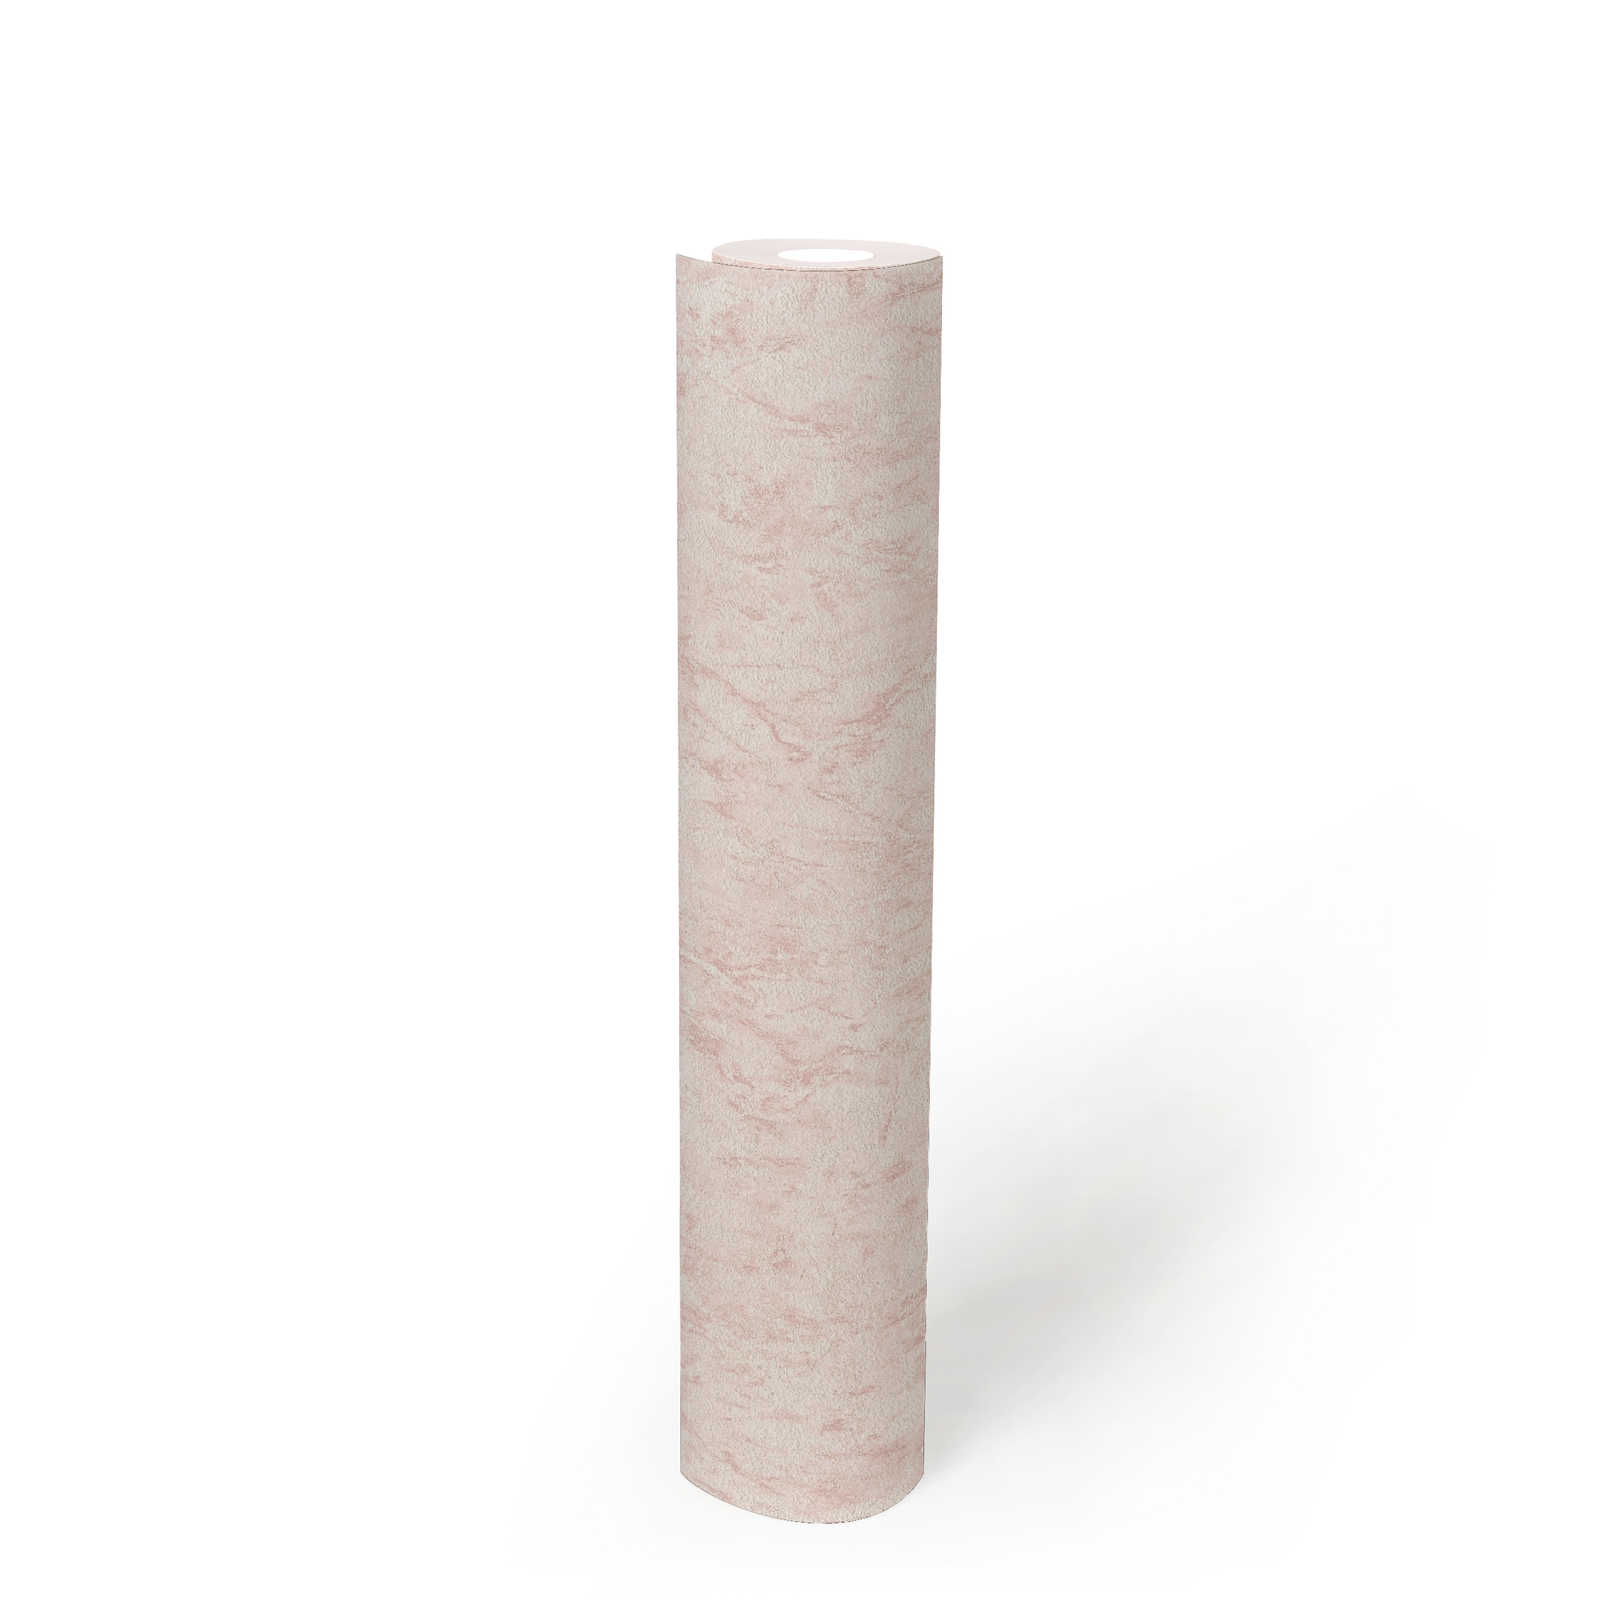             Eenheidsbehang met structuureffect & gevlekt design - roze, crème
        